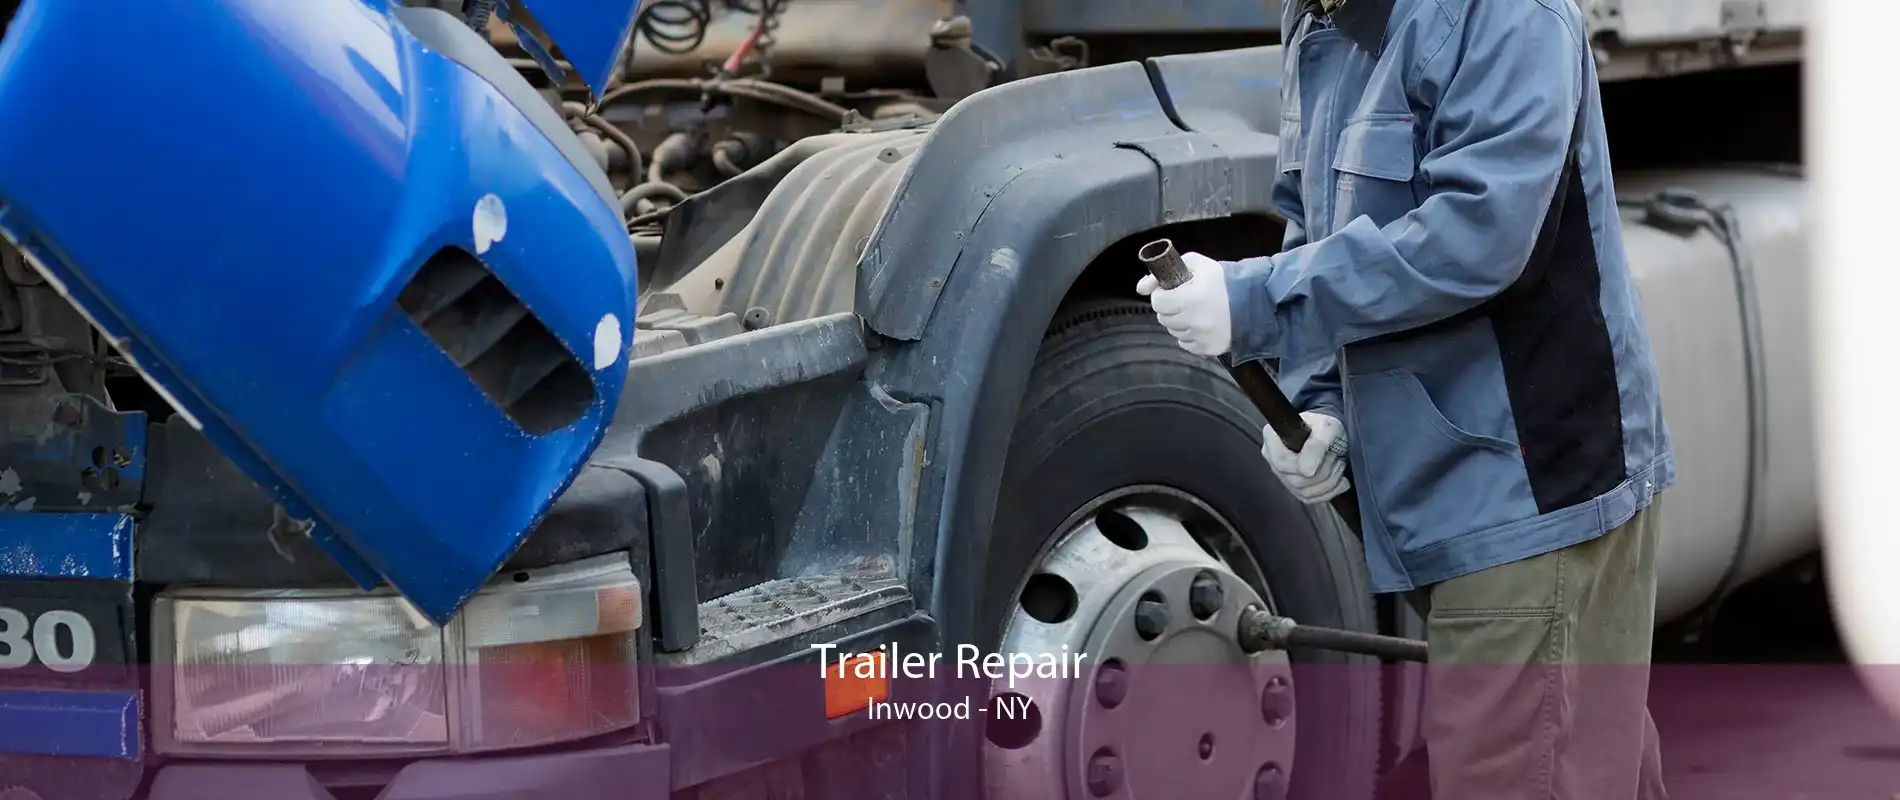 Trailer Repair Inwood - NY